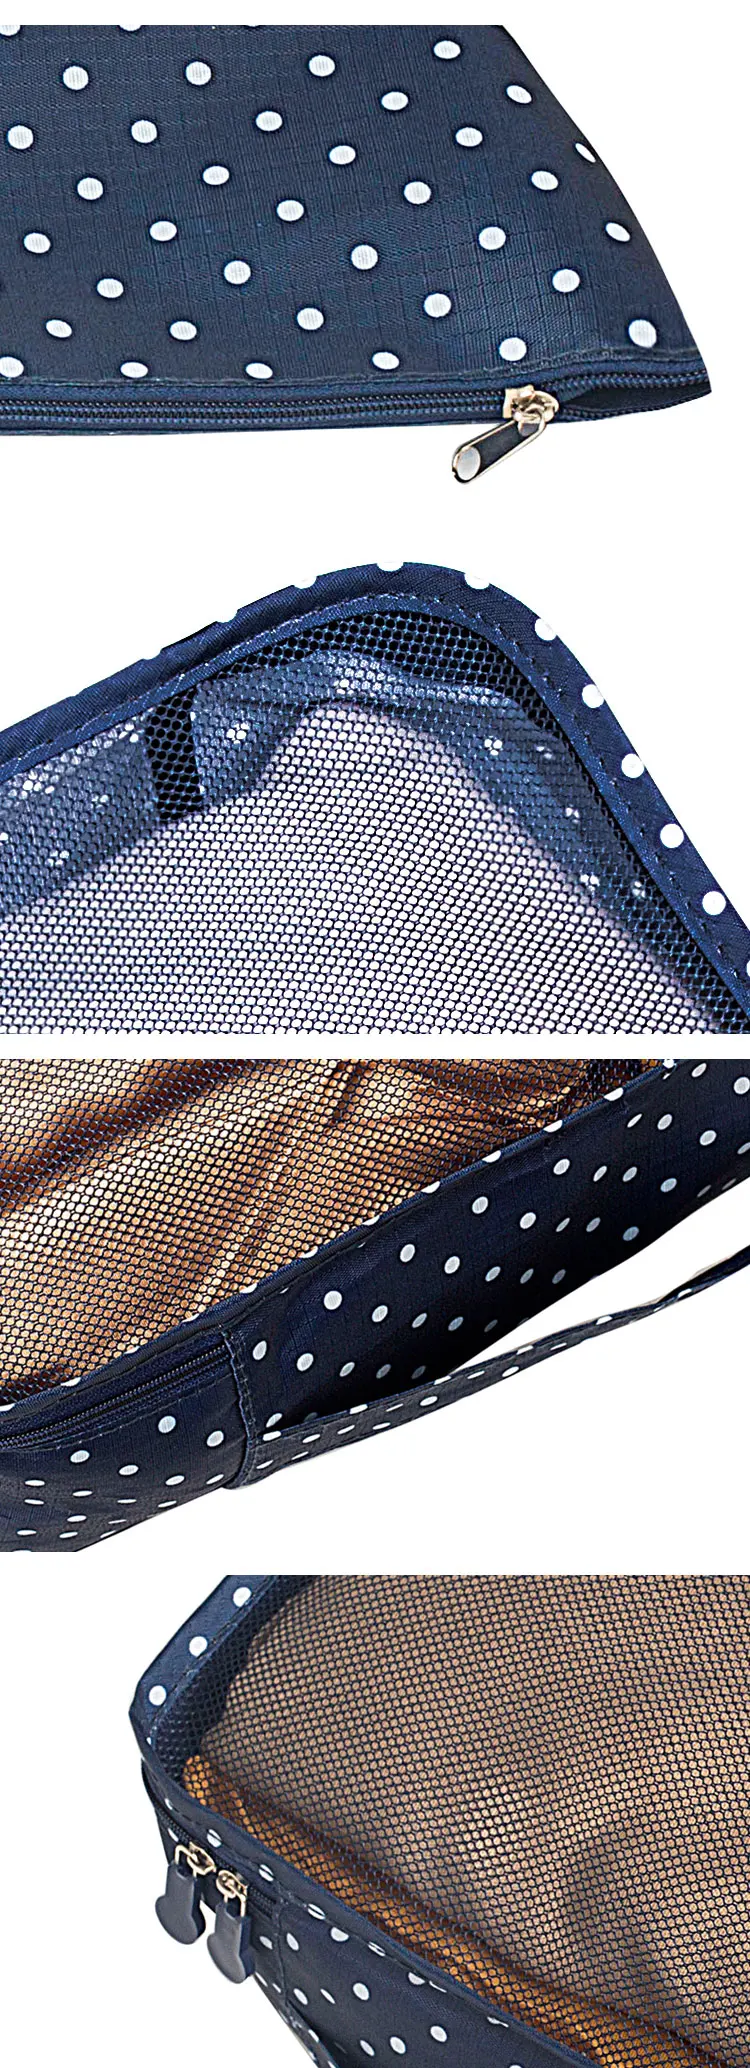 BAKINGCHEF набор из 6 дорожных сумок Женские Мужские трусы для хранения бюстгальтер нижнее белье Органайзер одежда косметичка для сна аксессуары